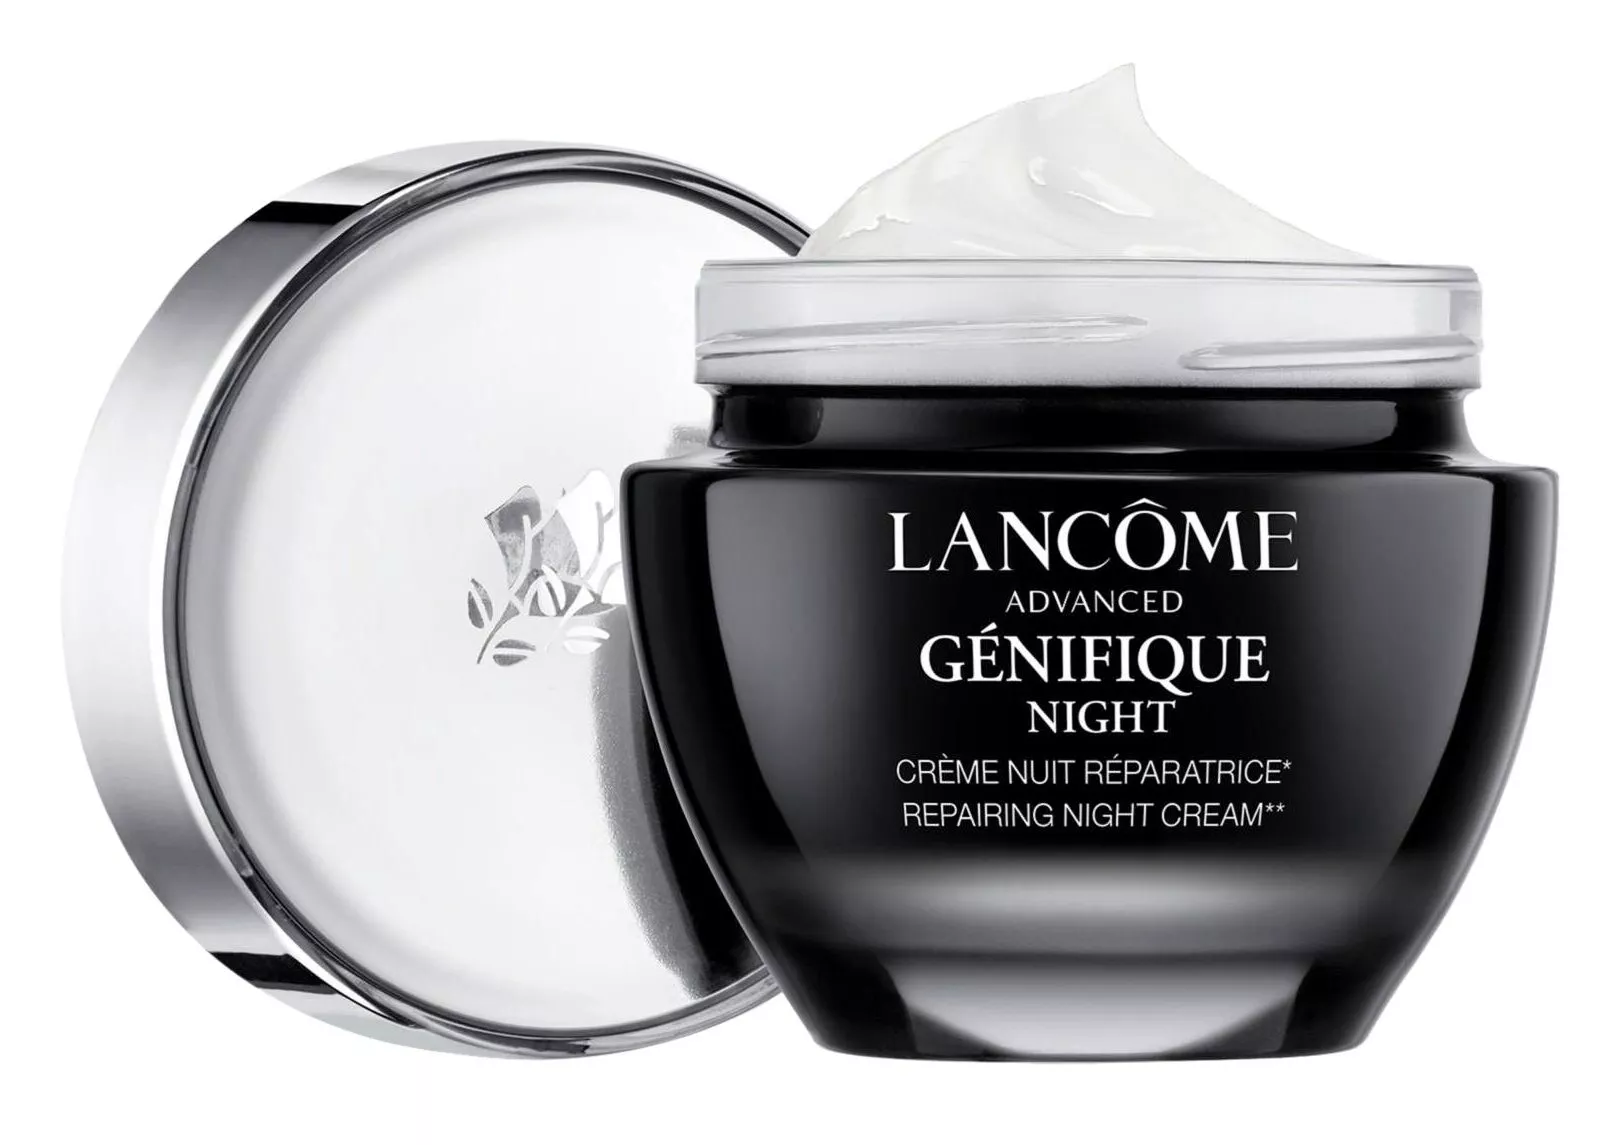 Lancôme Advanced Génifique Night Cream vähentää ikääntymisen merkkejä ja auttaa ihoa korjaamaan luontaista suojaansa yöunien aikana, 50 ml 89 e.